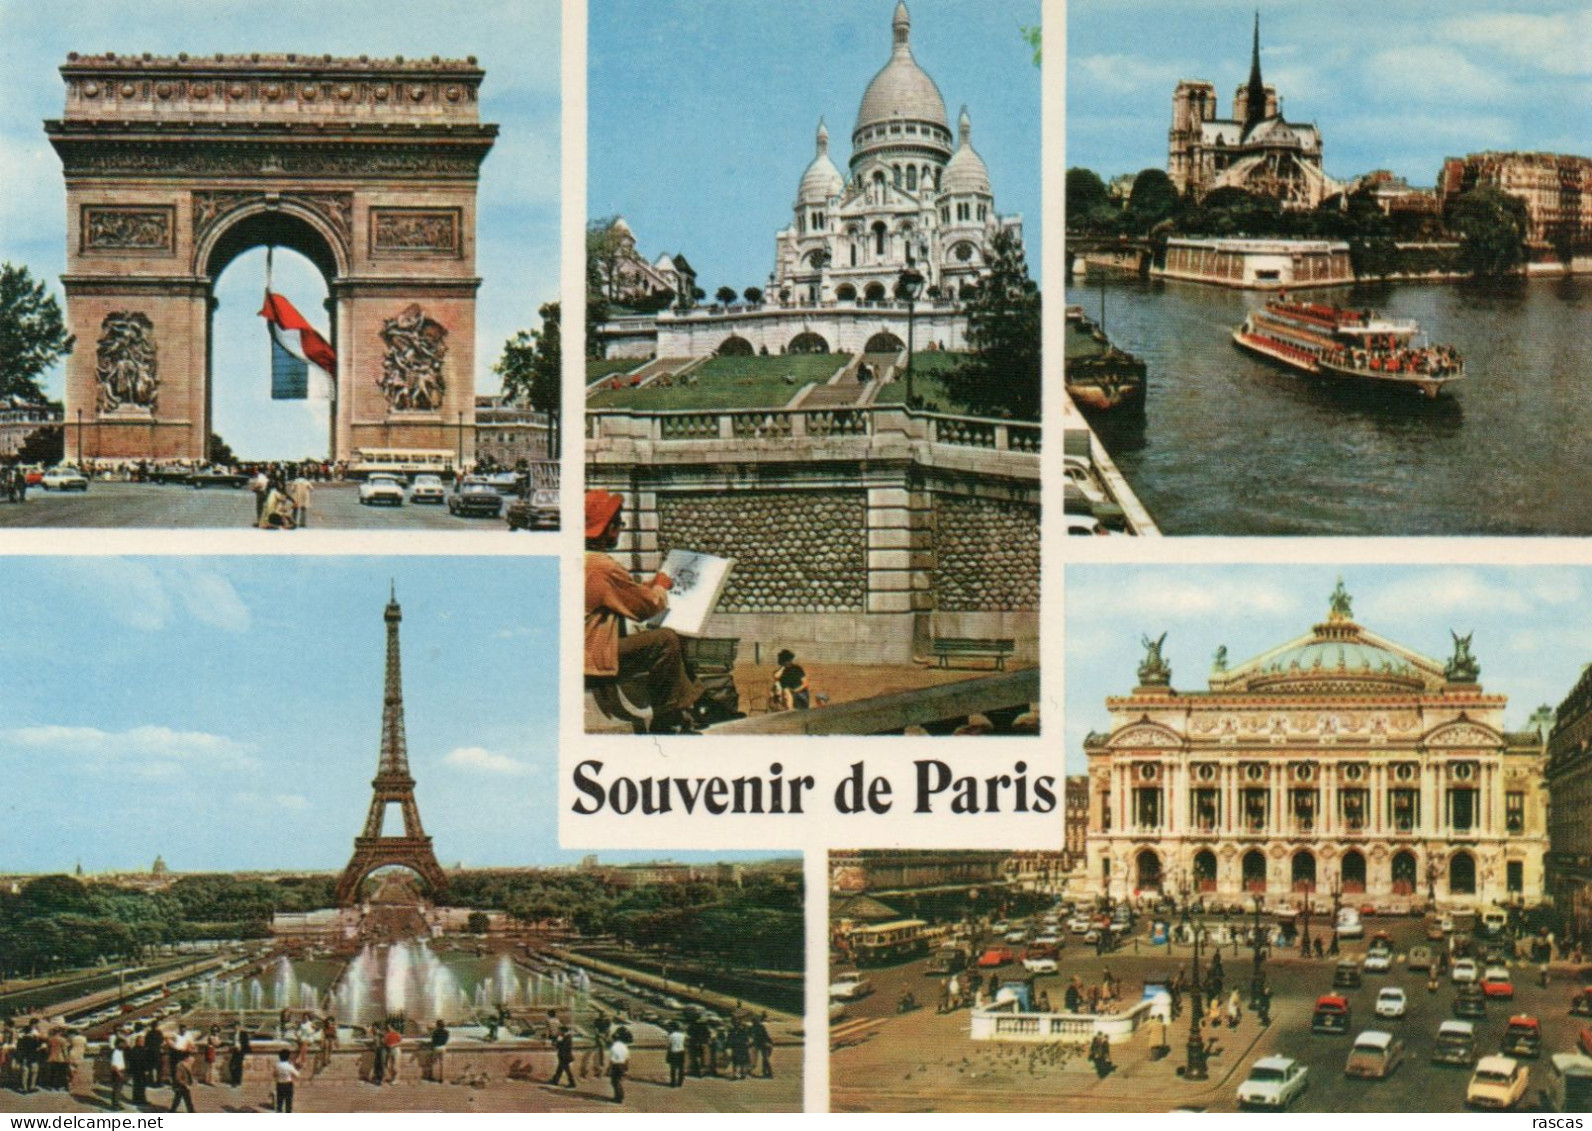 CPM - P - PARIS - SOUVENIR DE PARIS - MULTIVUES - ARC DE TRIOMPHE - TOUR EIFFEL - SACRE COEUR - OPERA - NOTRE DAME - Panoramic Views